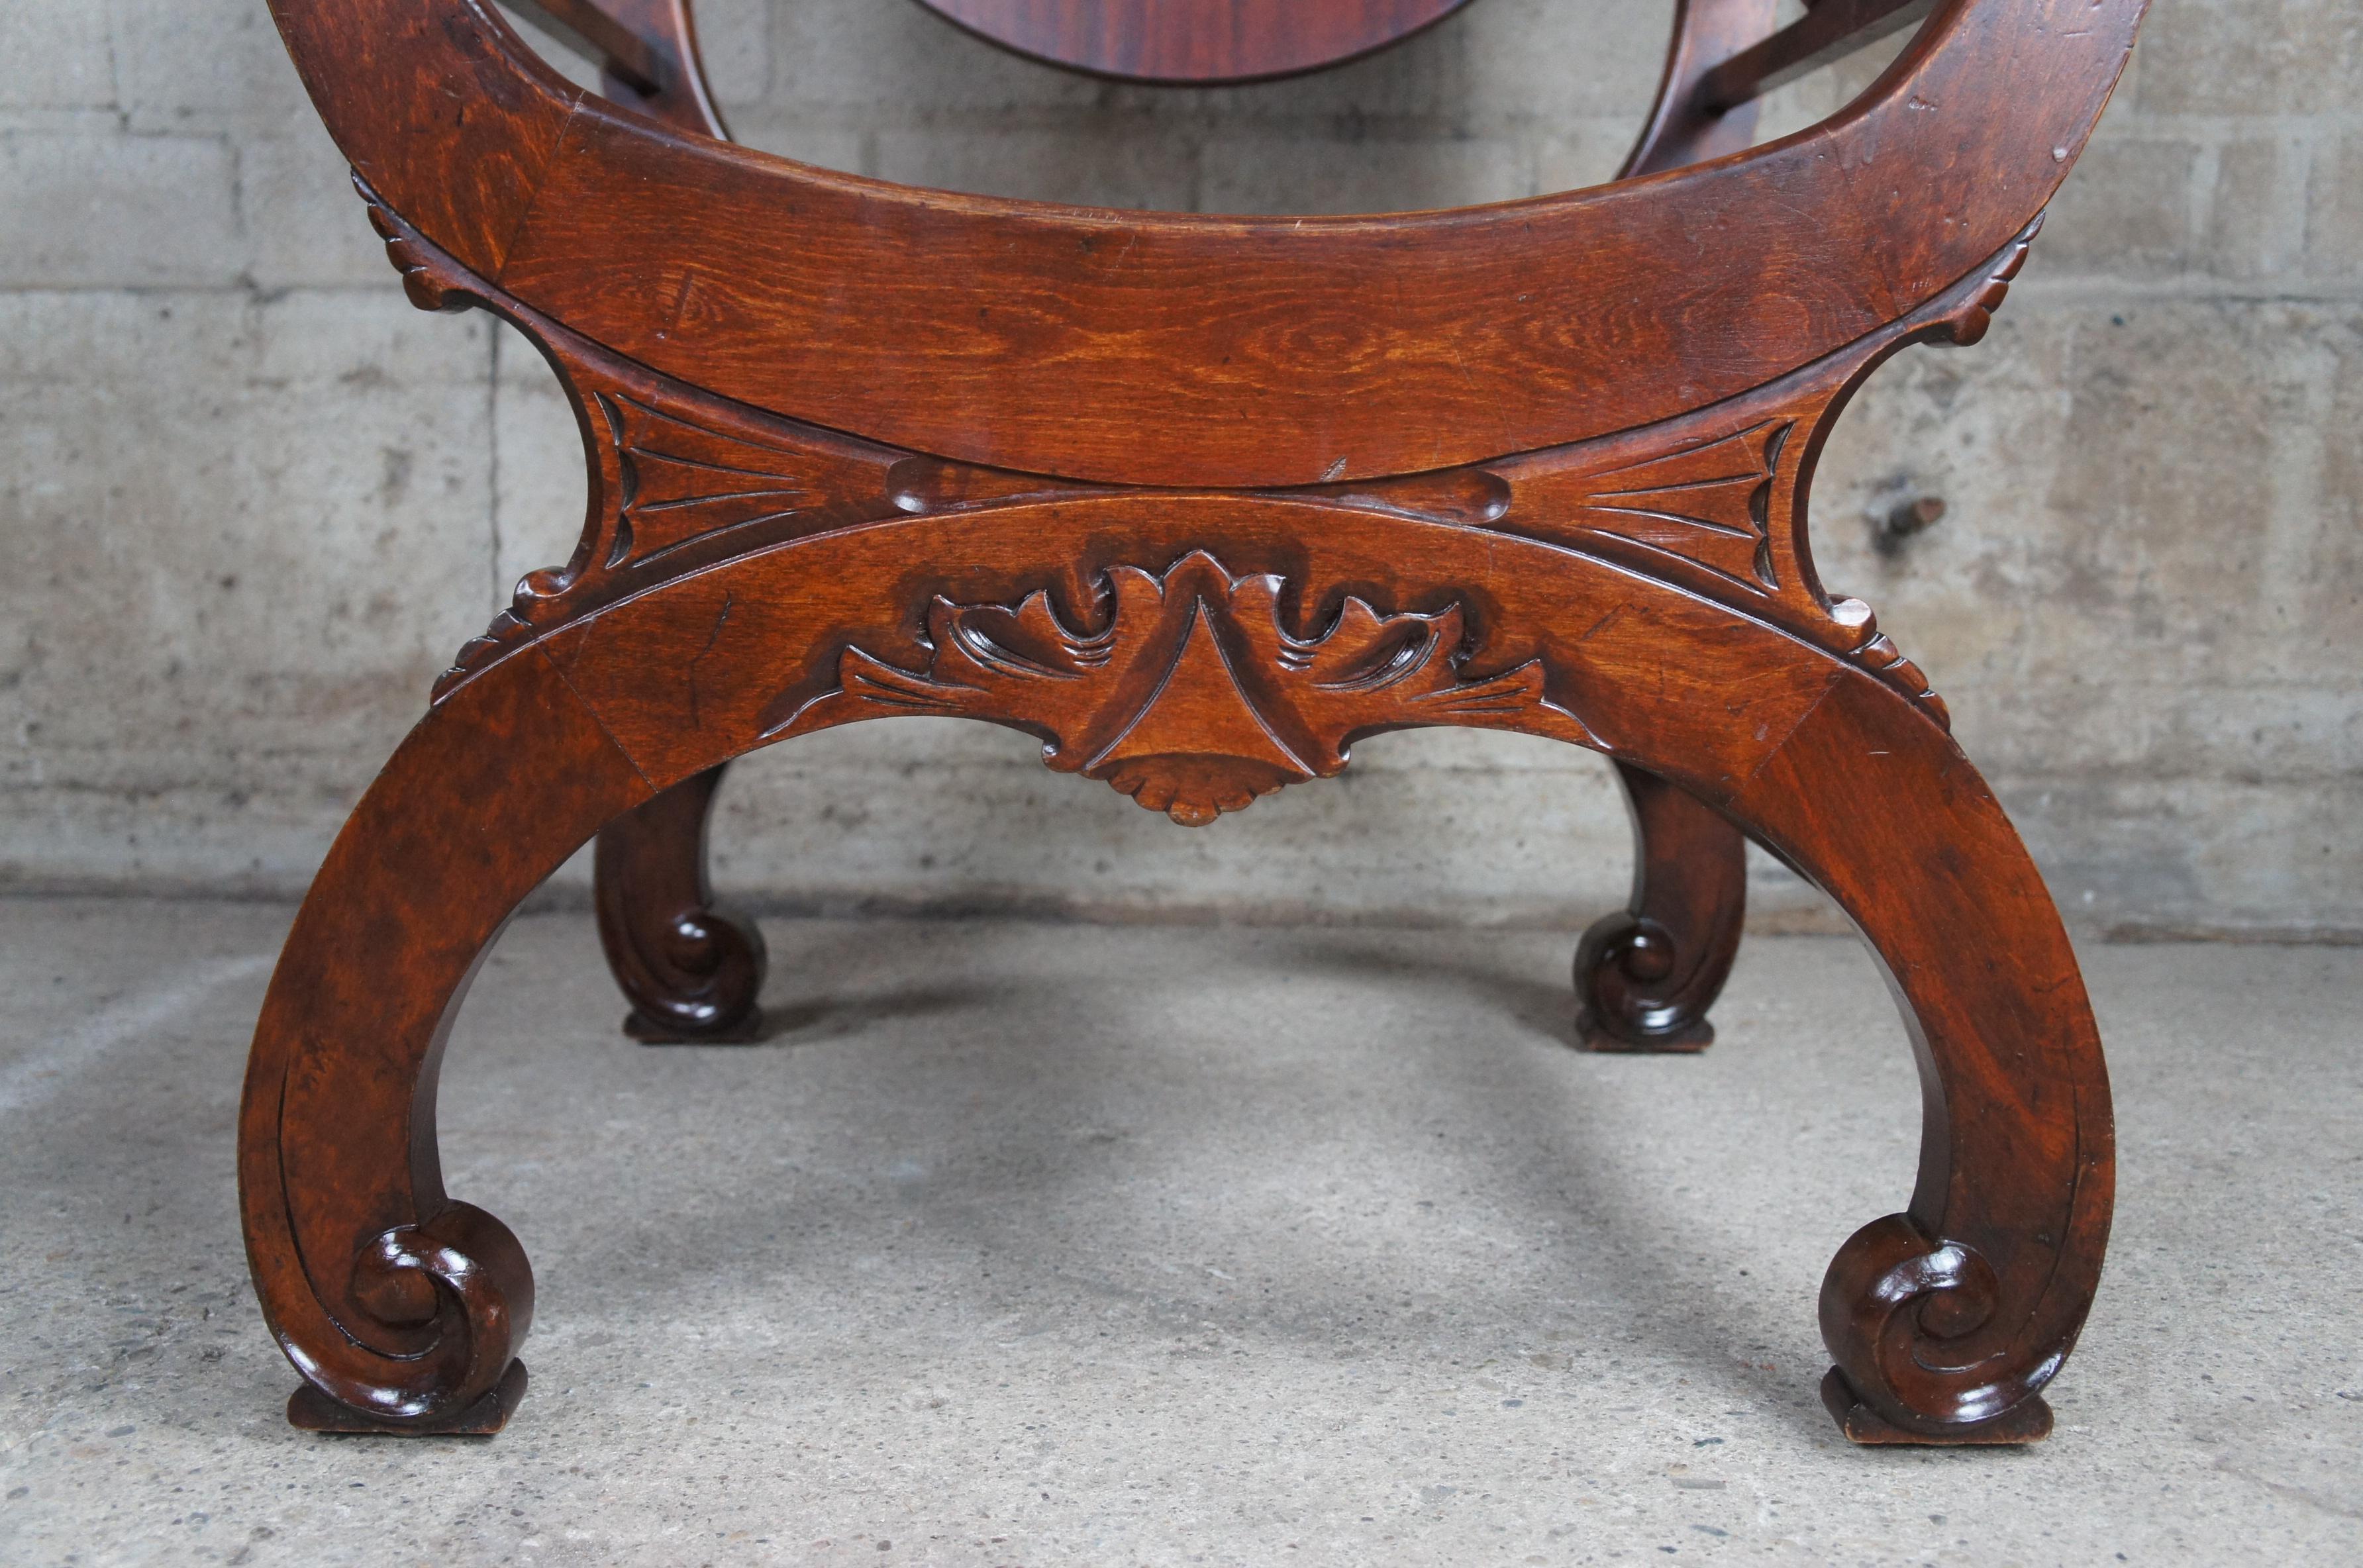 Antique Renaissance Revival Mahogany Curule Savonarola Lion Throne Arm Chair For Sale 2